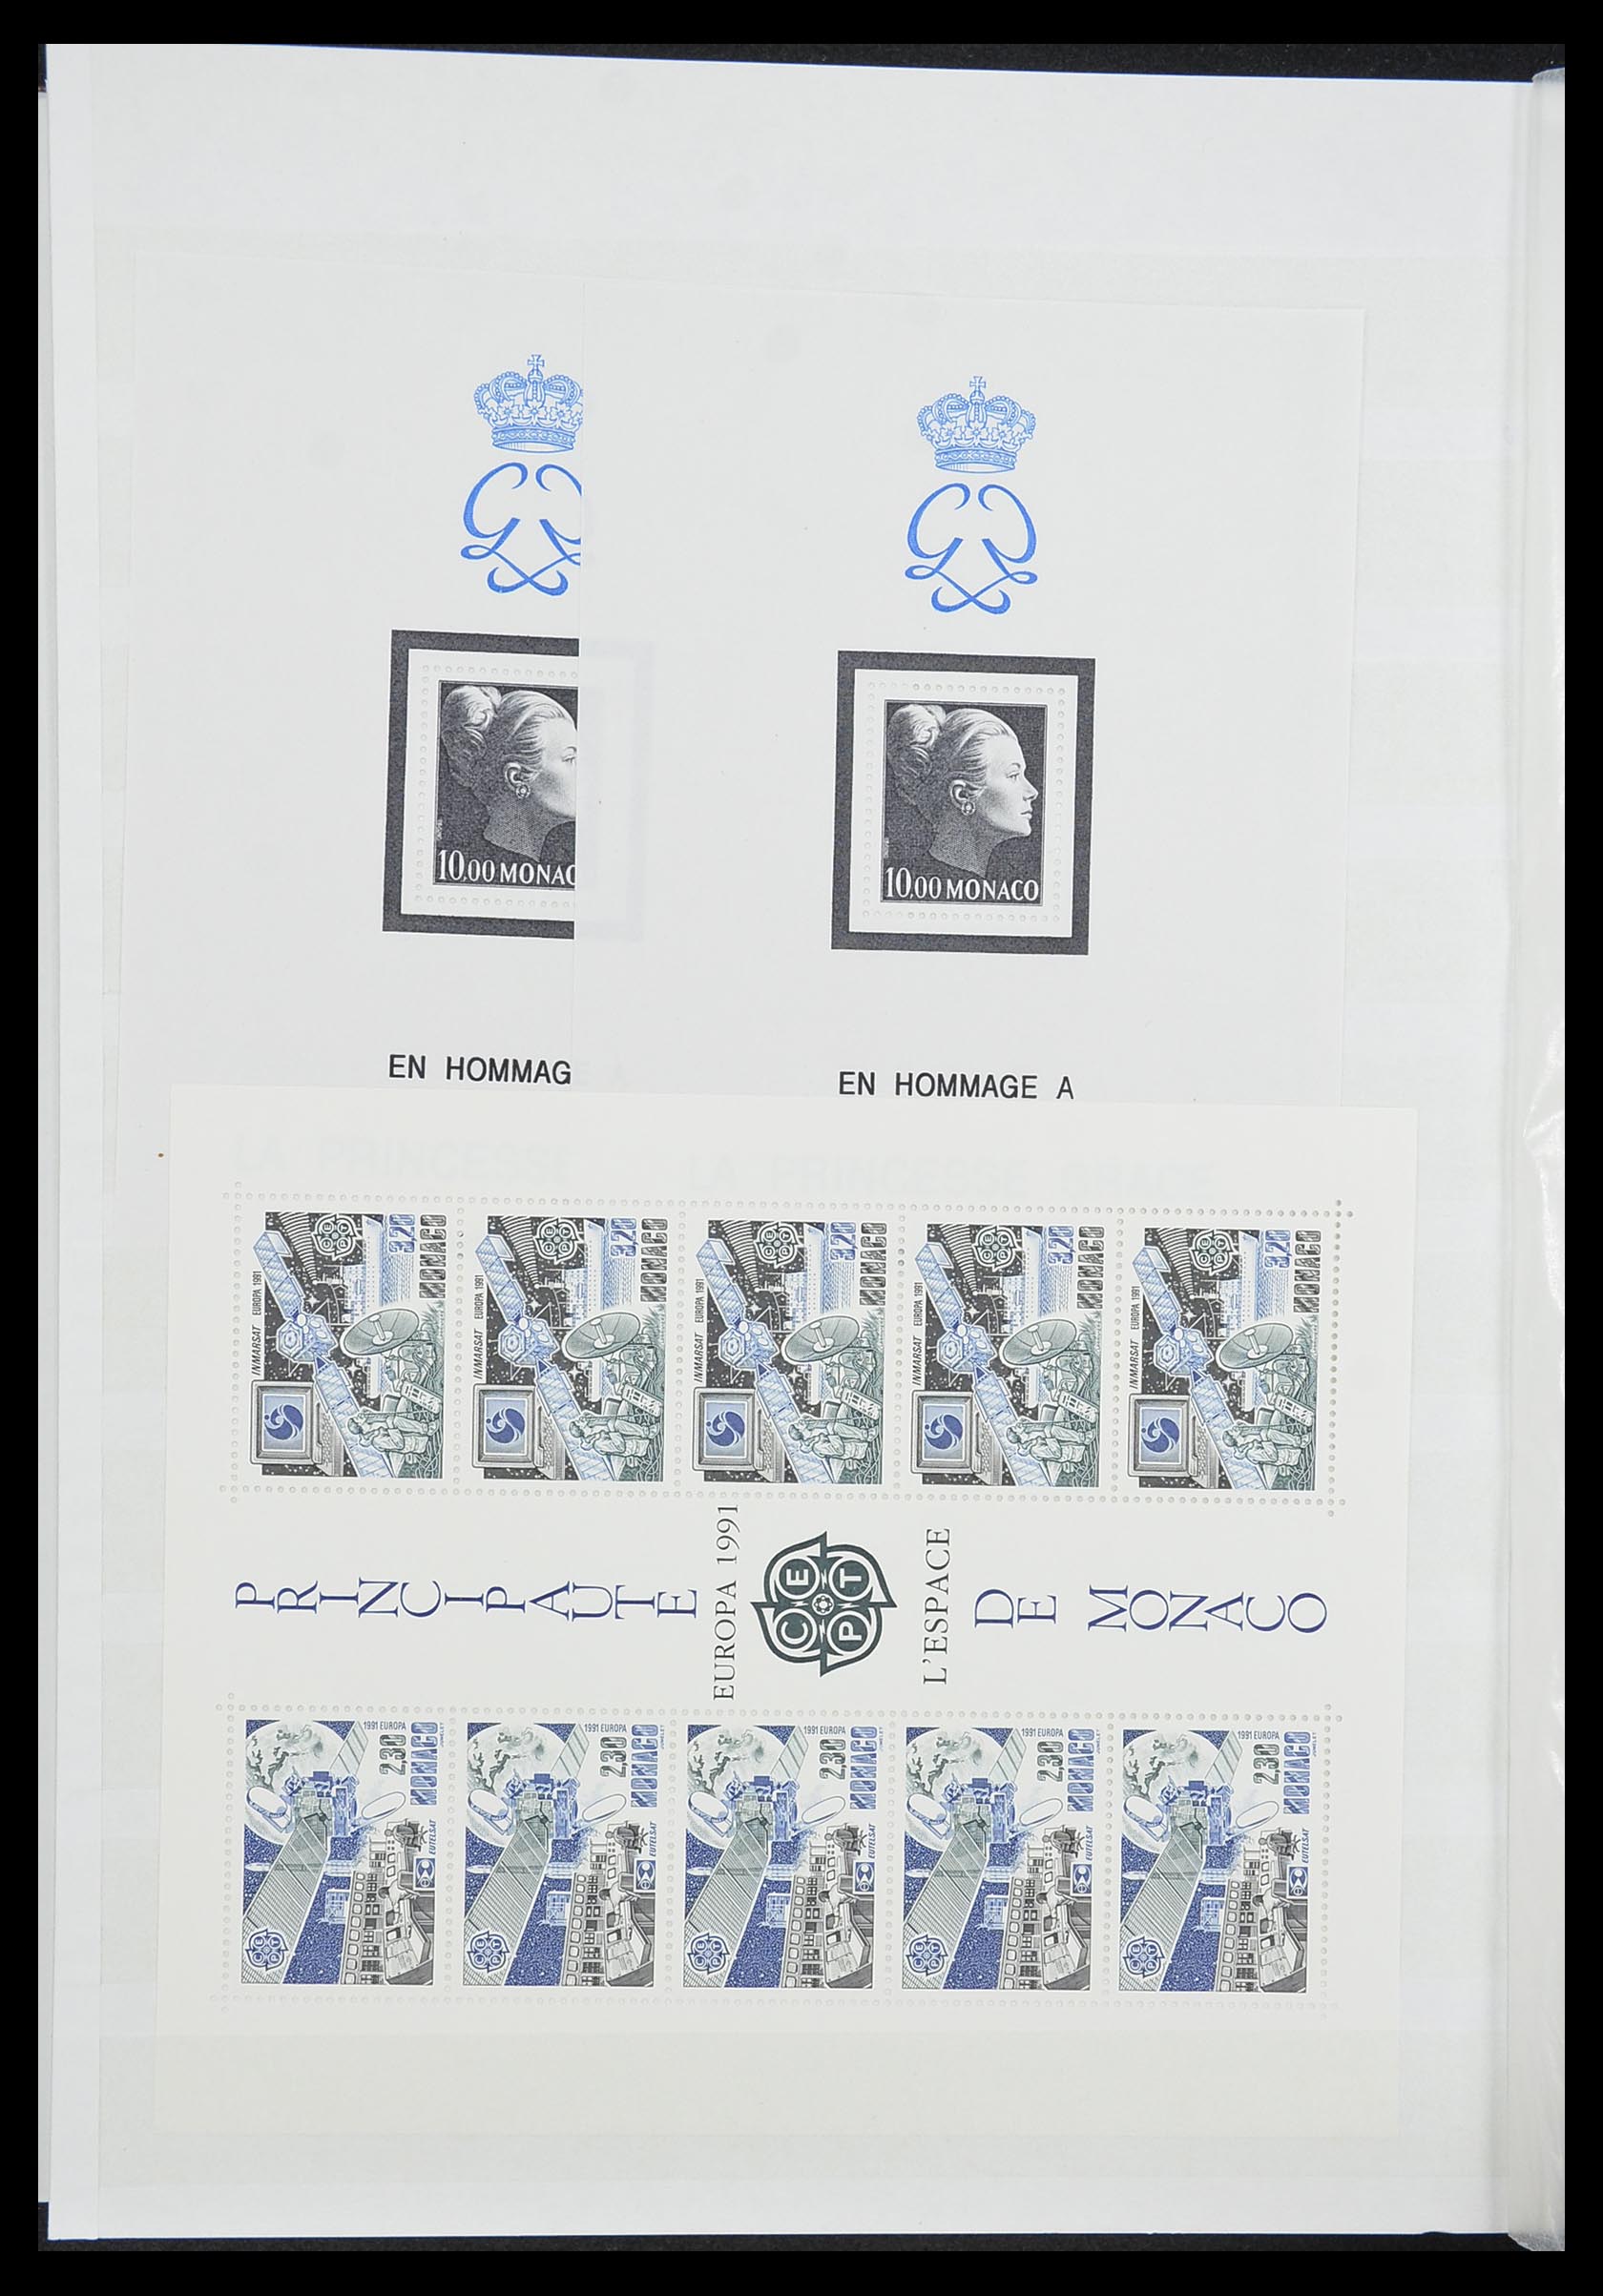 33833 032 - Stamp collection 33833 Monaco souvenir sheets 1979-2015.